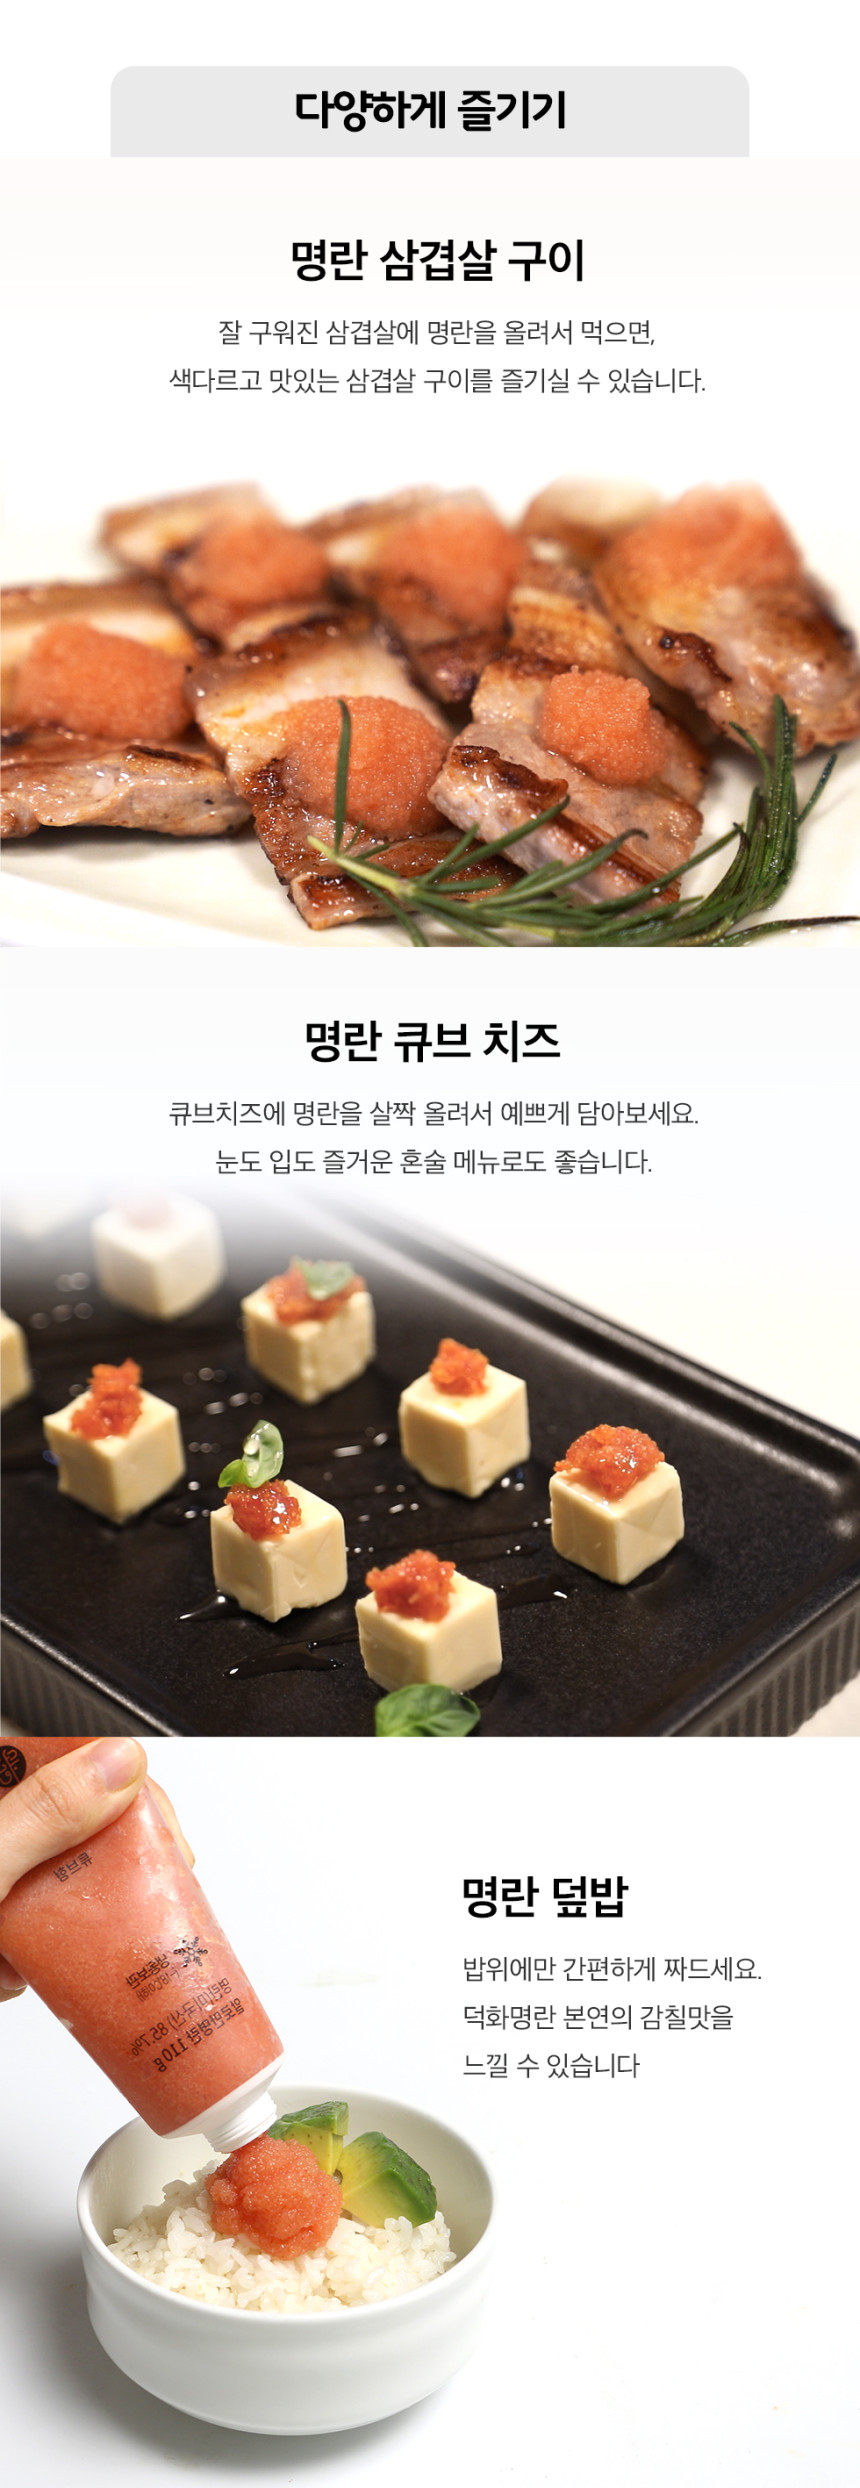 韓國食品-[Thedndshop] Sticks Mentai Fish Sauce 110g